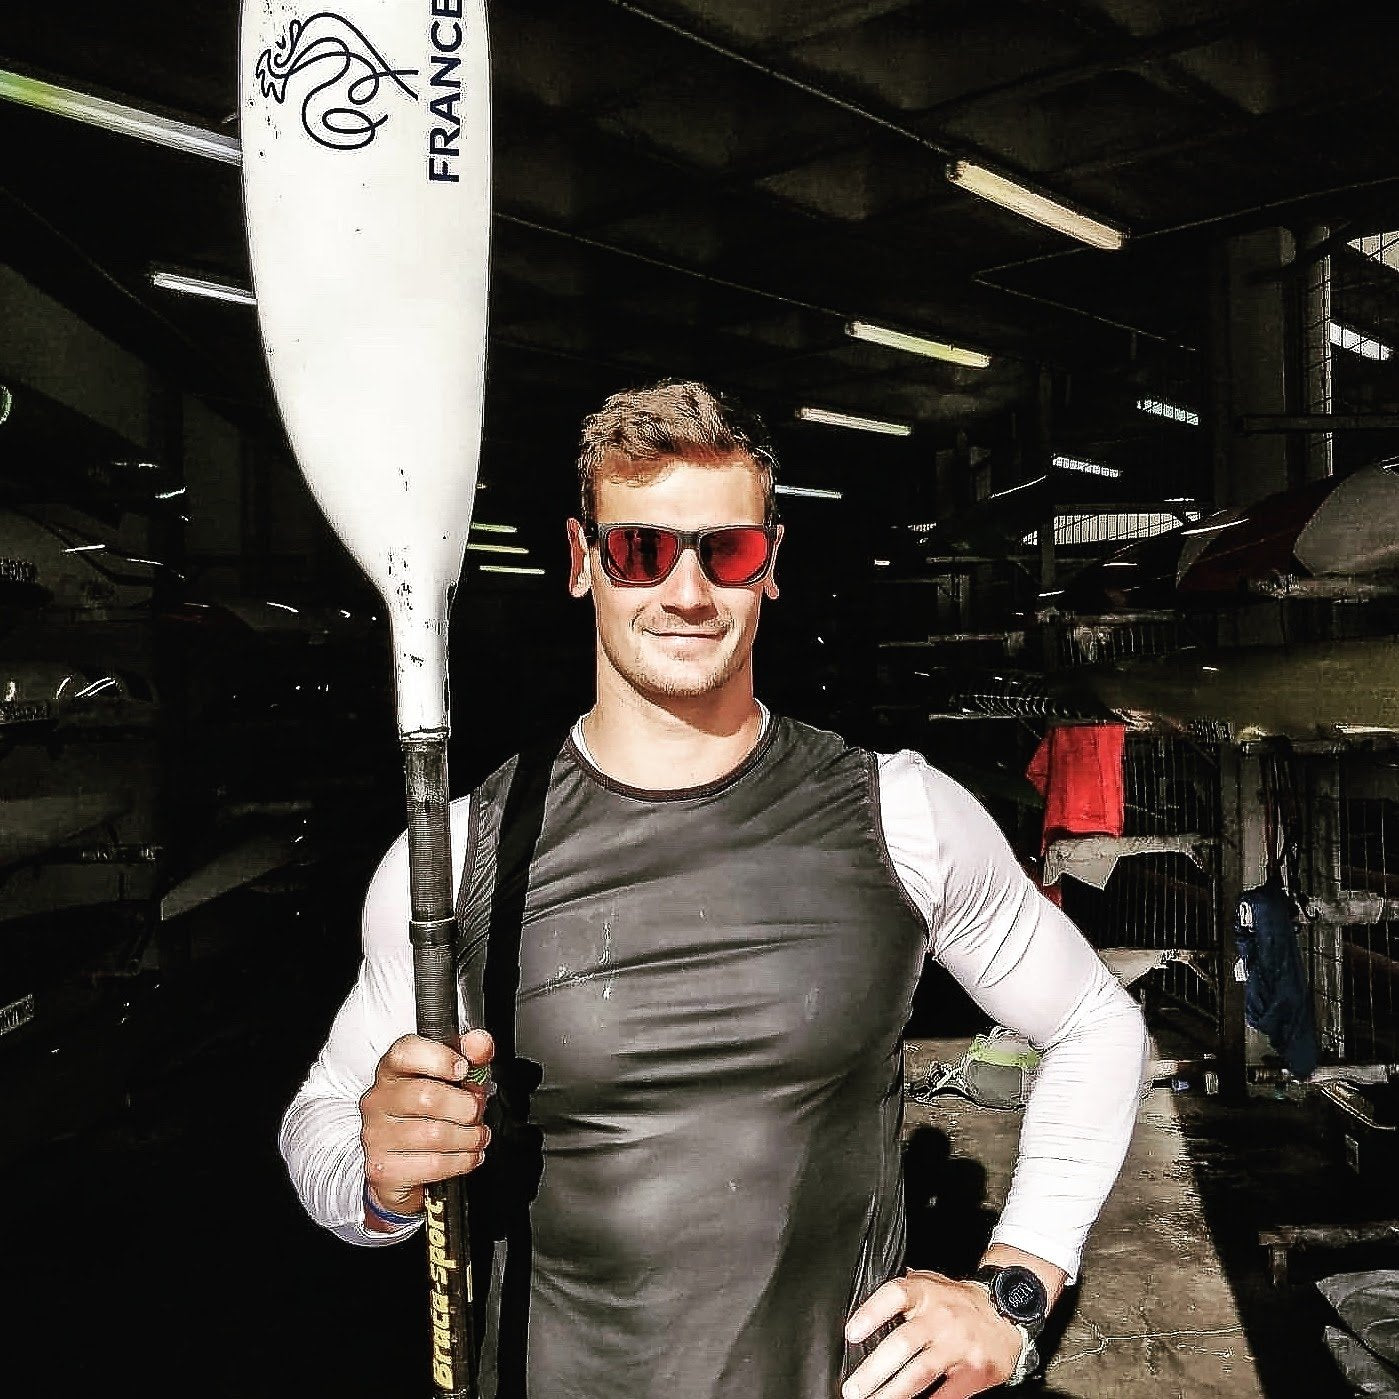 La kayakiste Guillaume LeFloch Decorchemont avec les lunettes de soleil Loubsol Androni